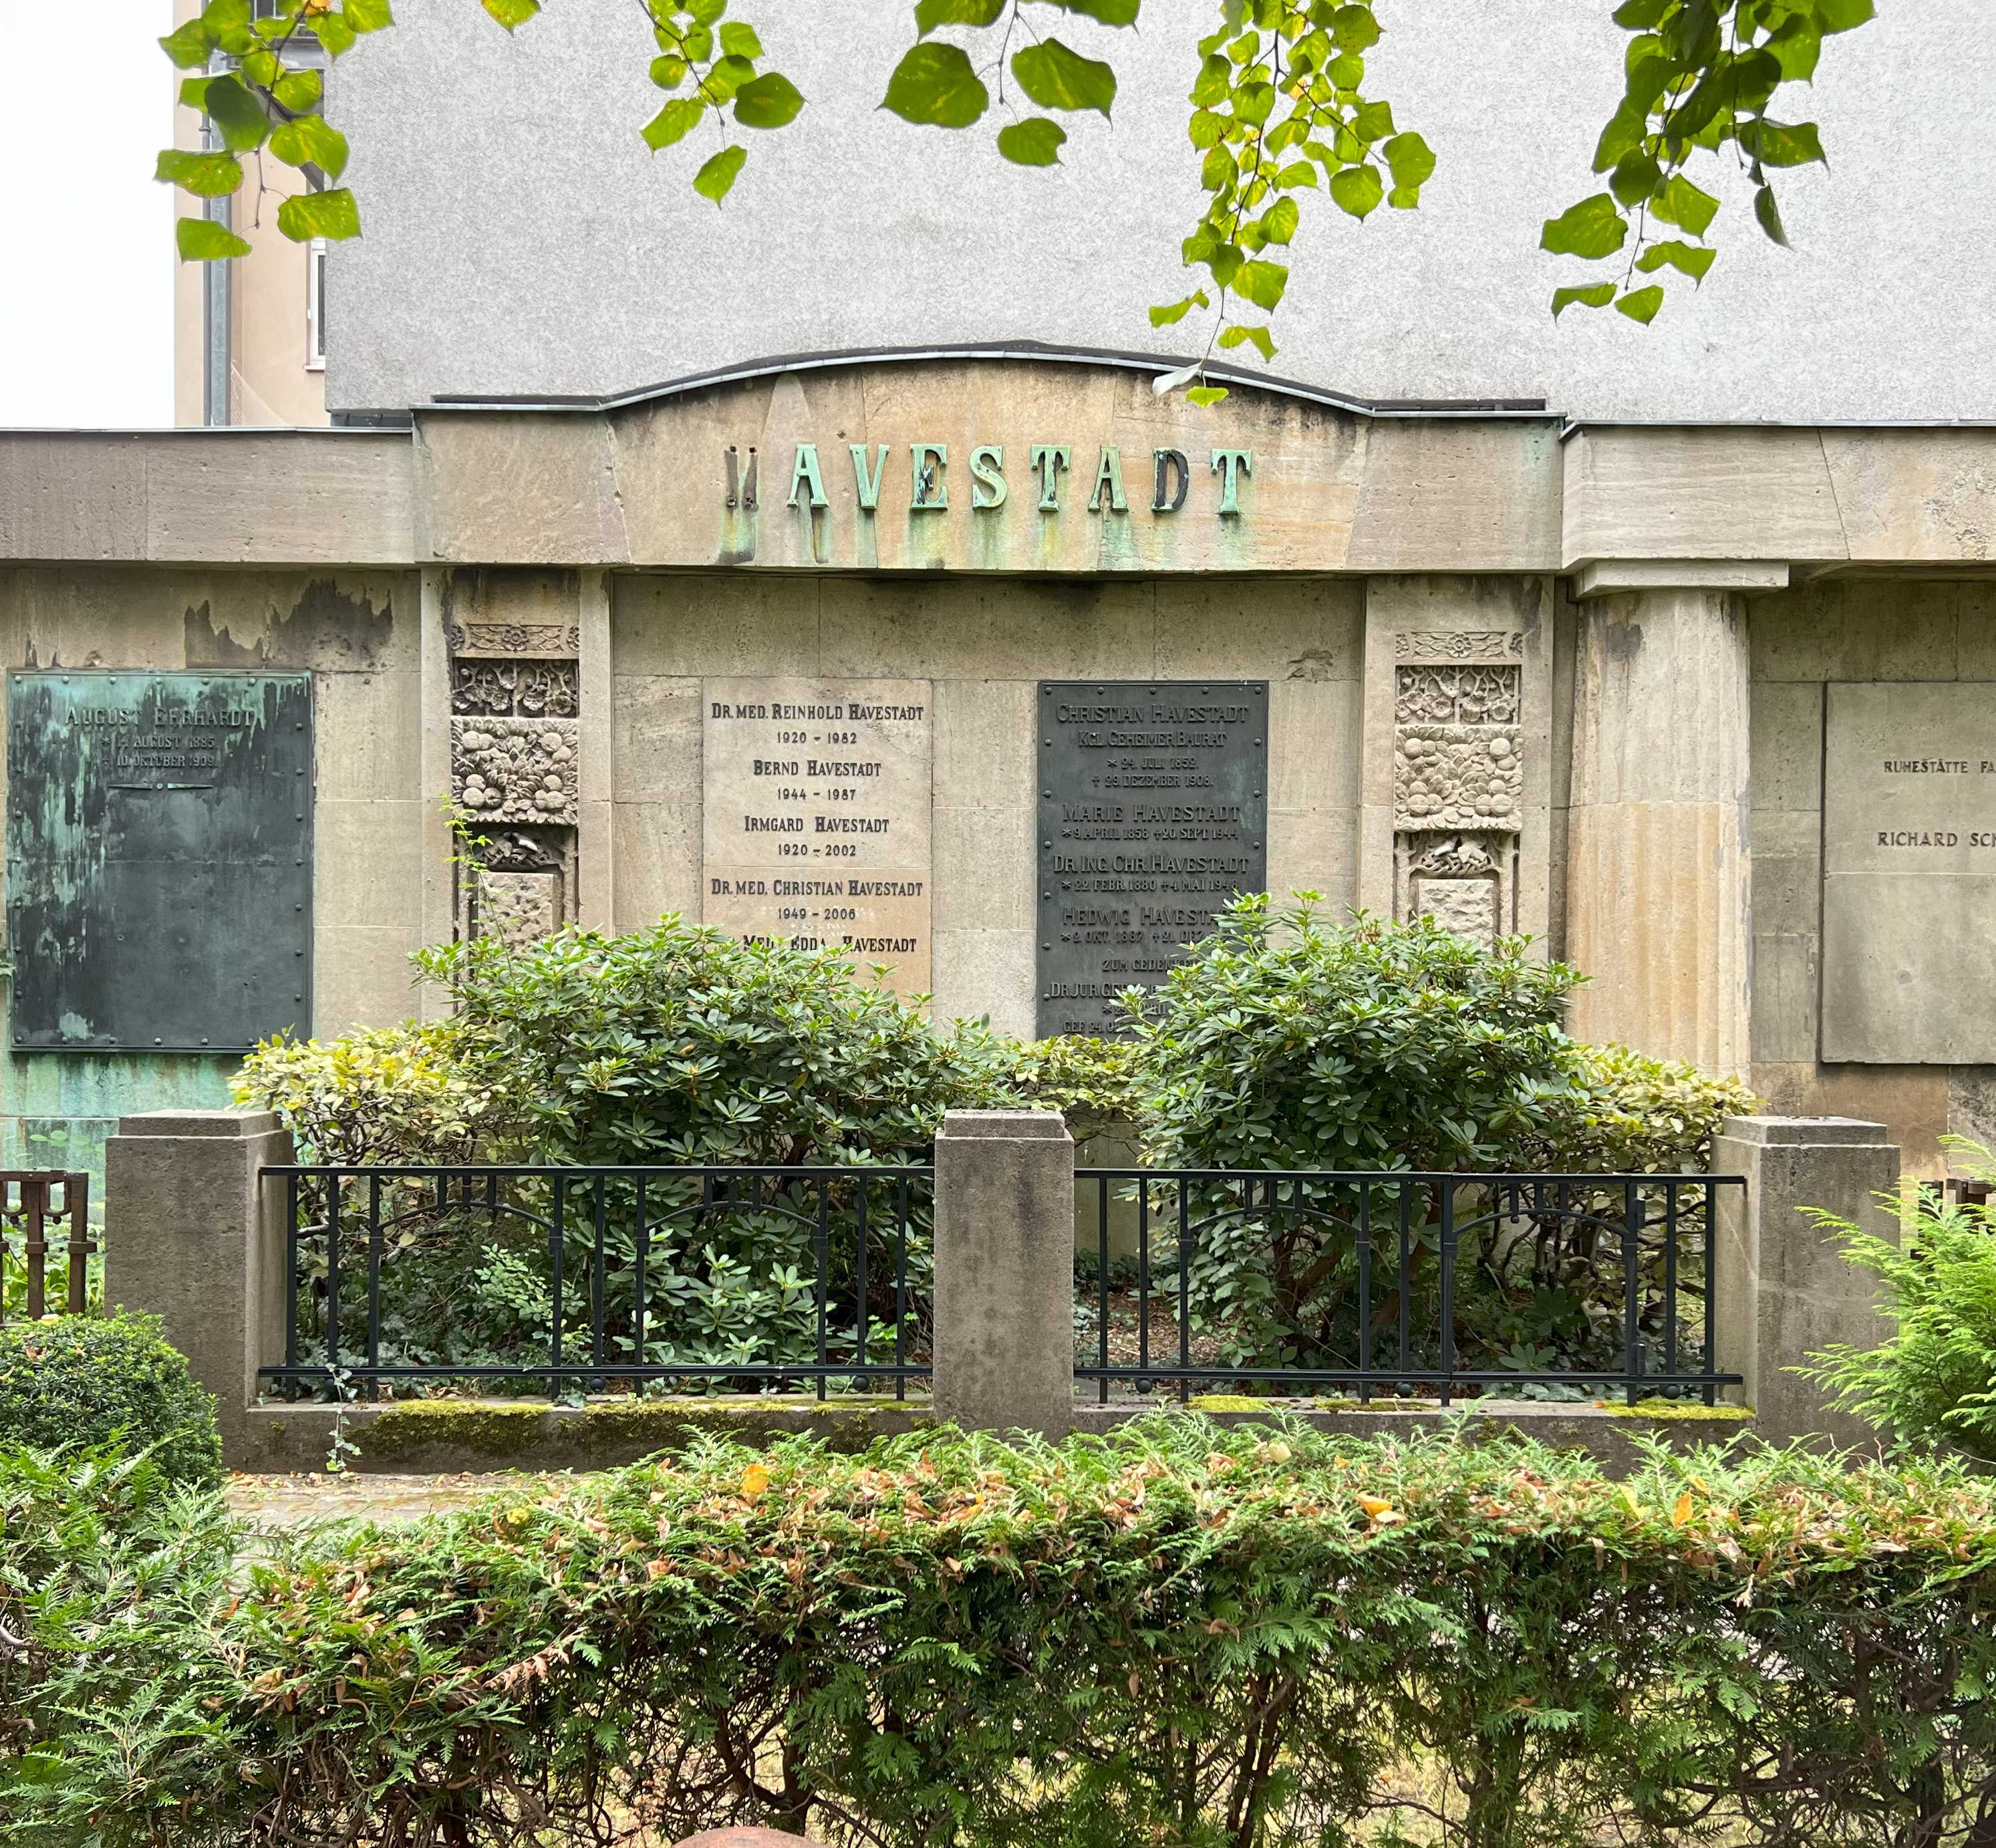 Grabstein Gerhard Havestadt, Friedhof Wilmersdorf, Berlin